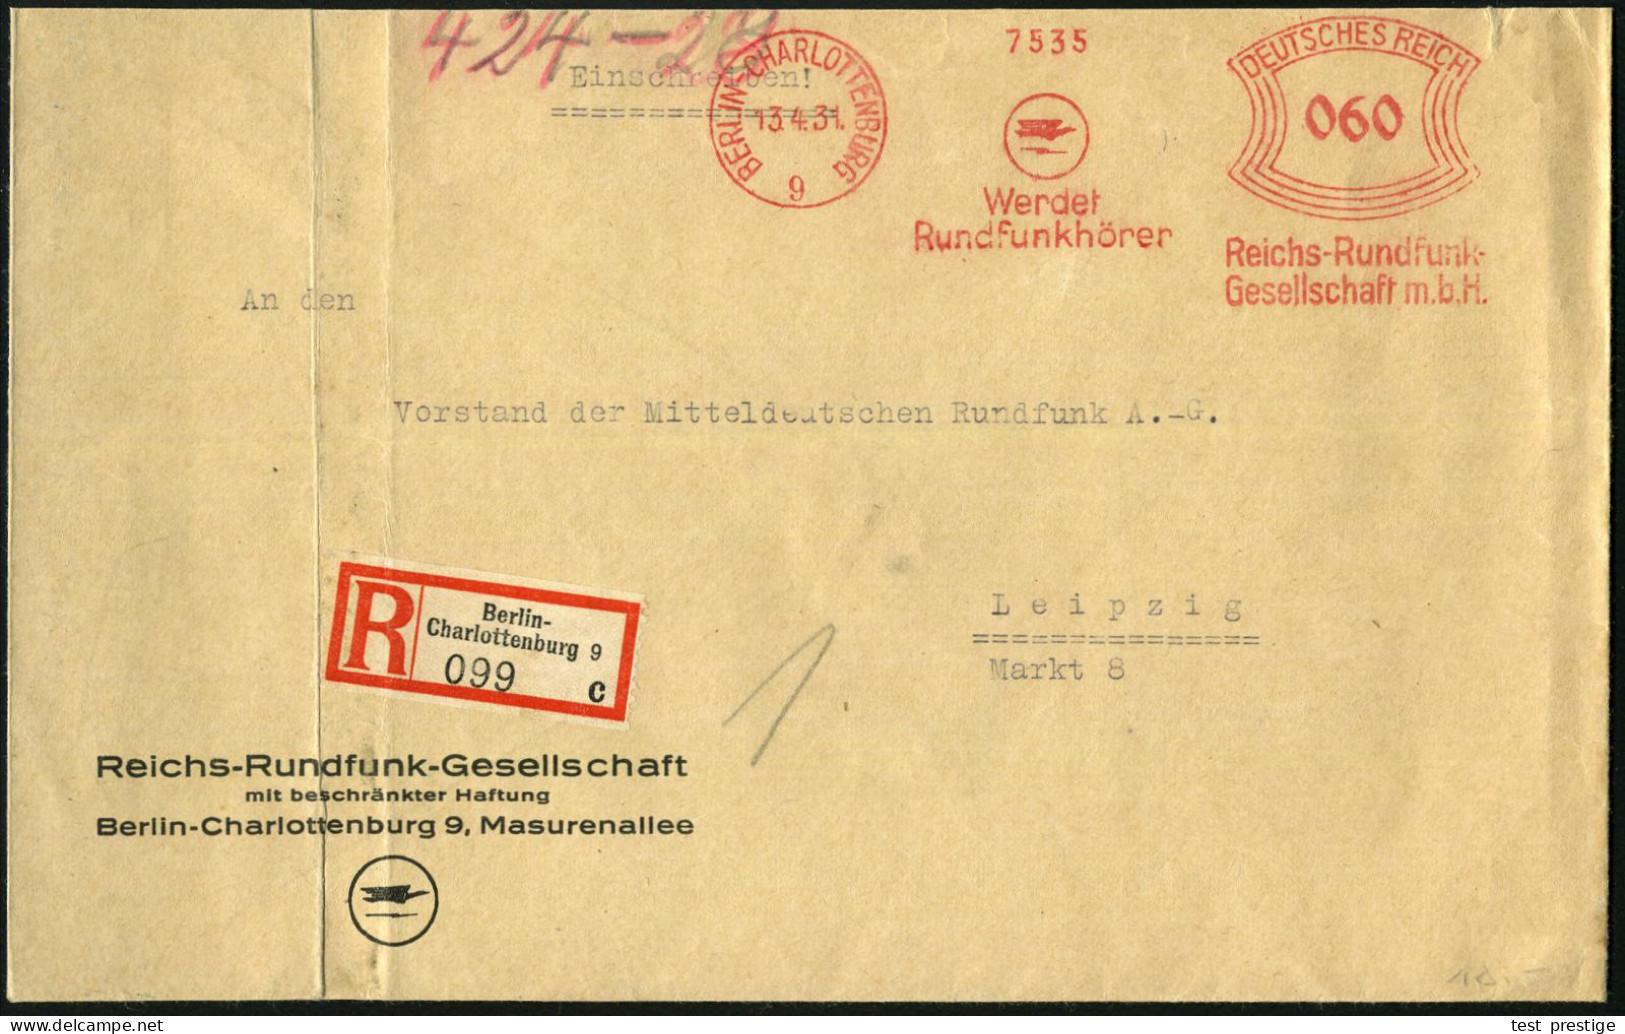 BERLIN-CHARLOTTENBURG/ 9/ Werdet/ Rundfunkhörer/ Reichs-Rundfunk-/ GmbH 1931 (13.4.) AFS Francotyp 060 Pf. (Logo) Auf Mo - Other